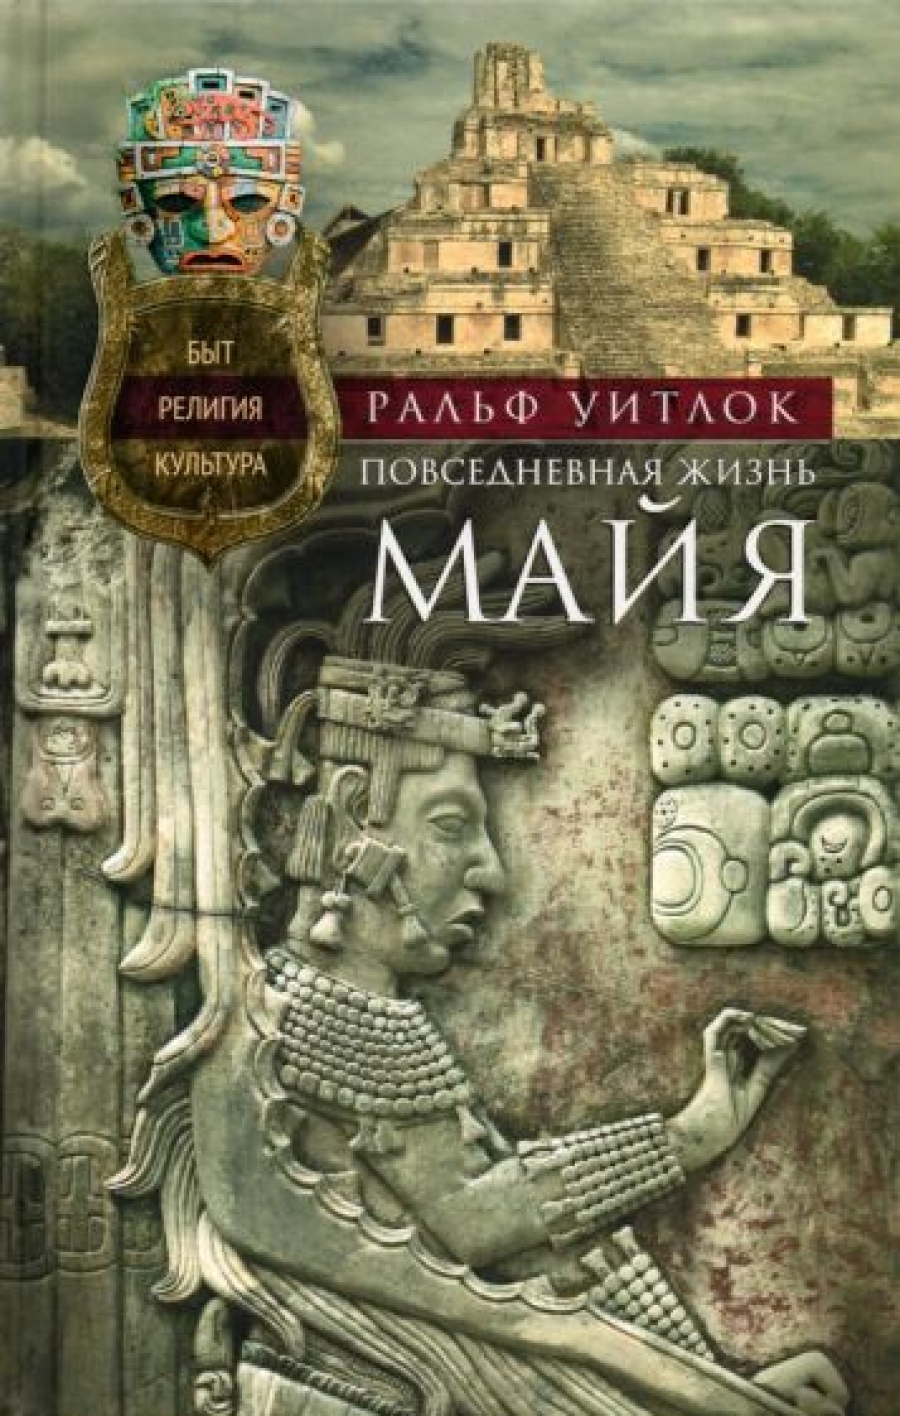 Уитлок Раль - Повседневная жизнь майя. Быт, религия, культура 